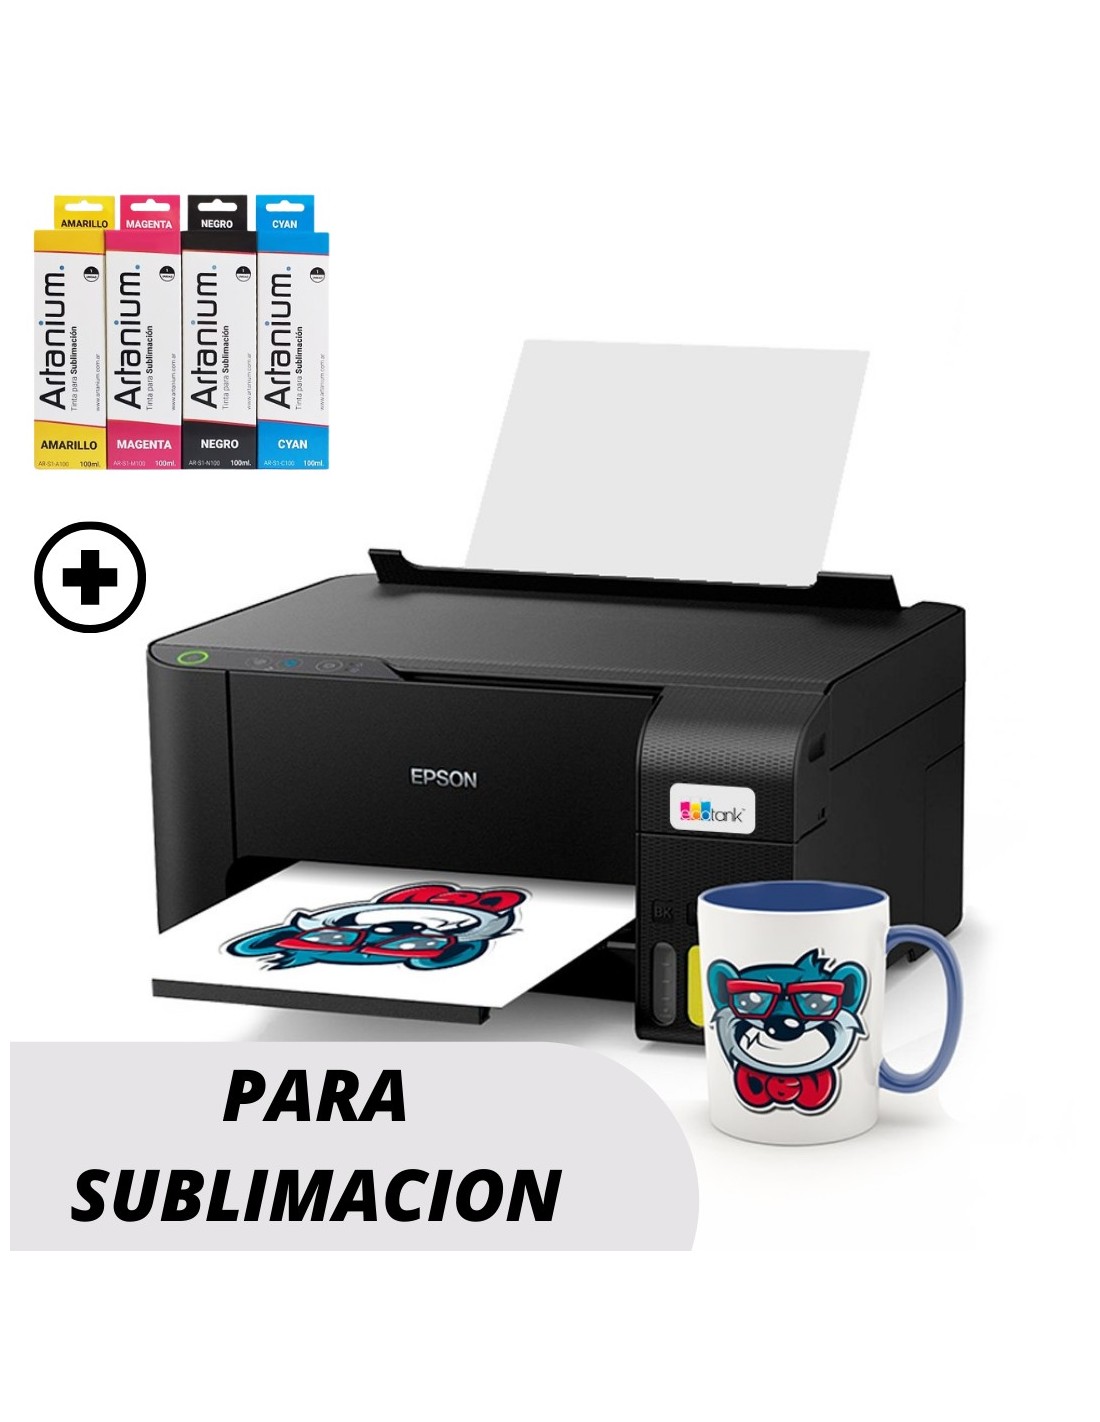 Impresora Multifunción Epson L3210 con Sistema PARA SUBLIMACION